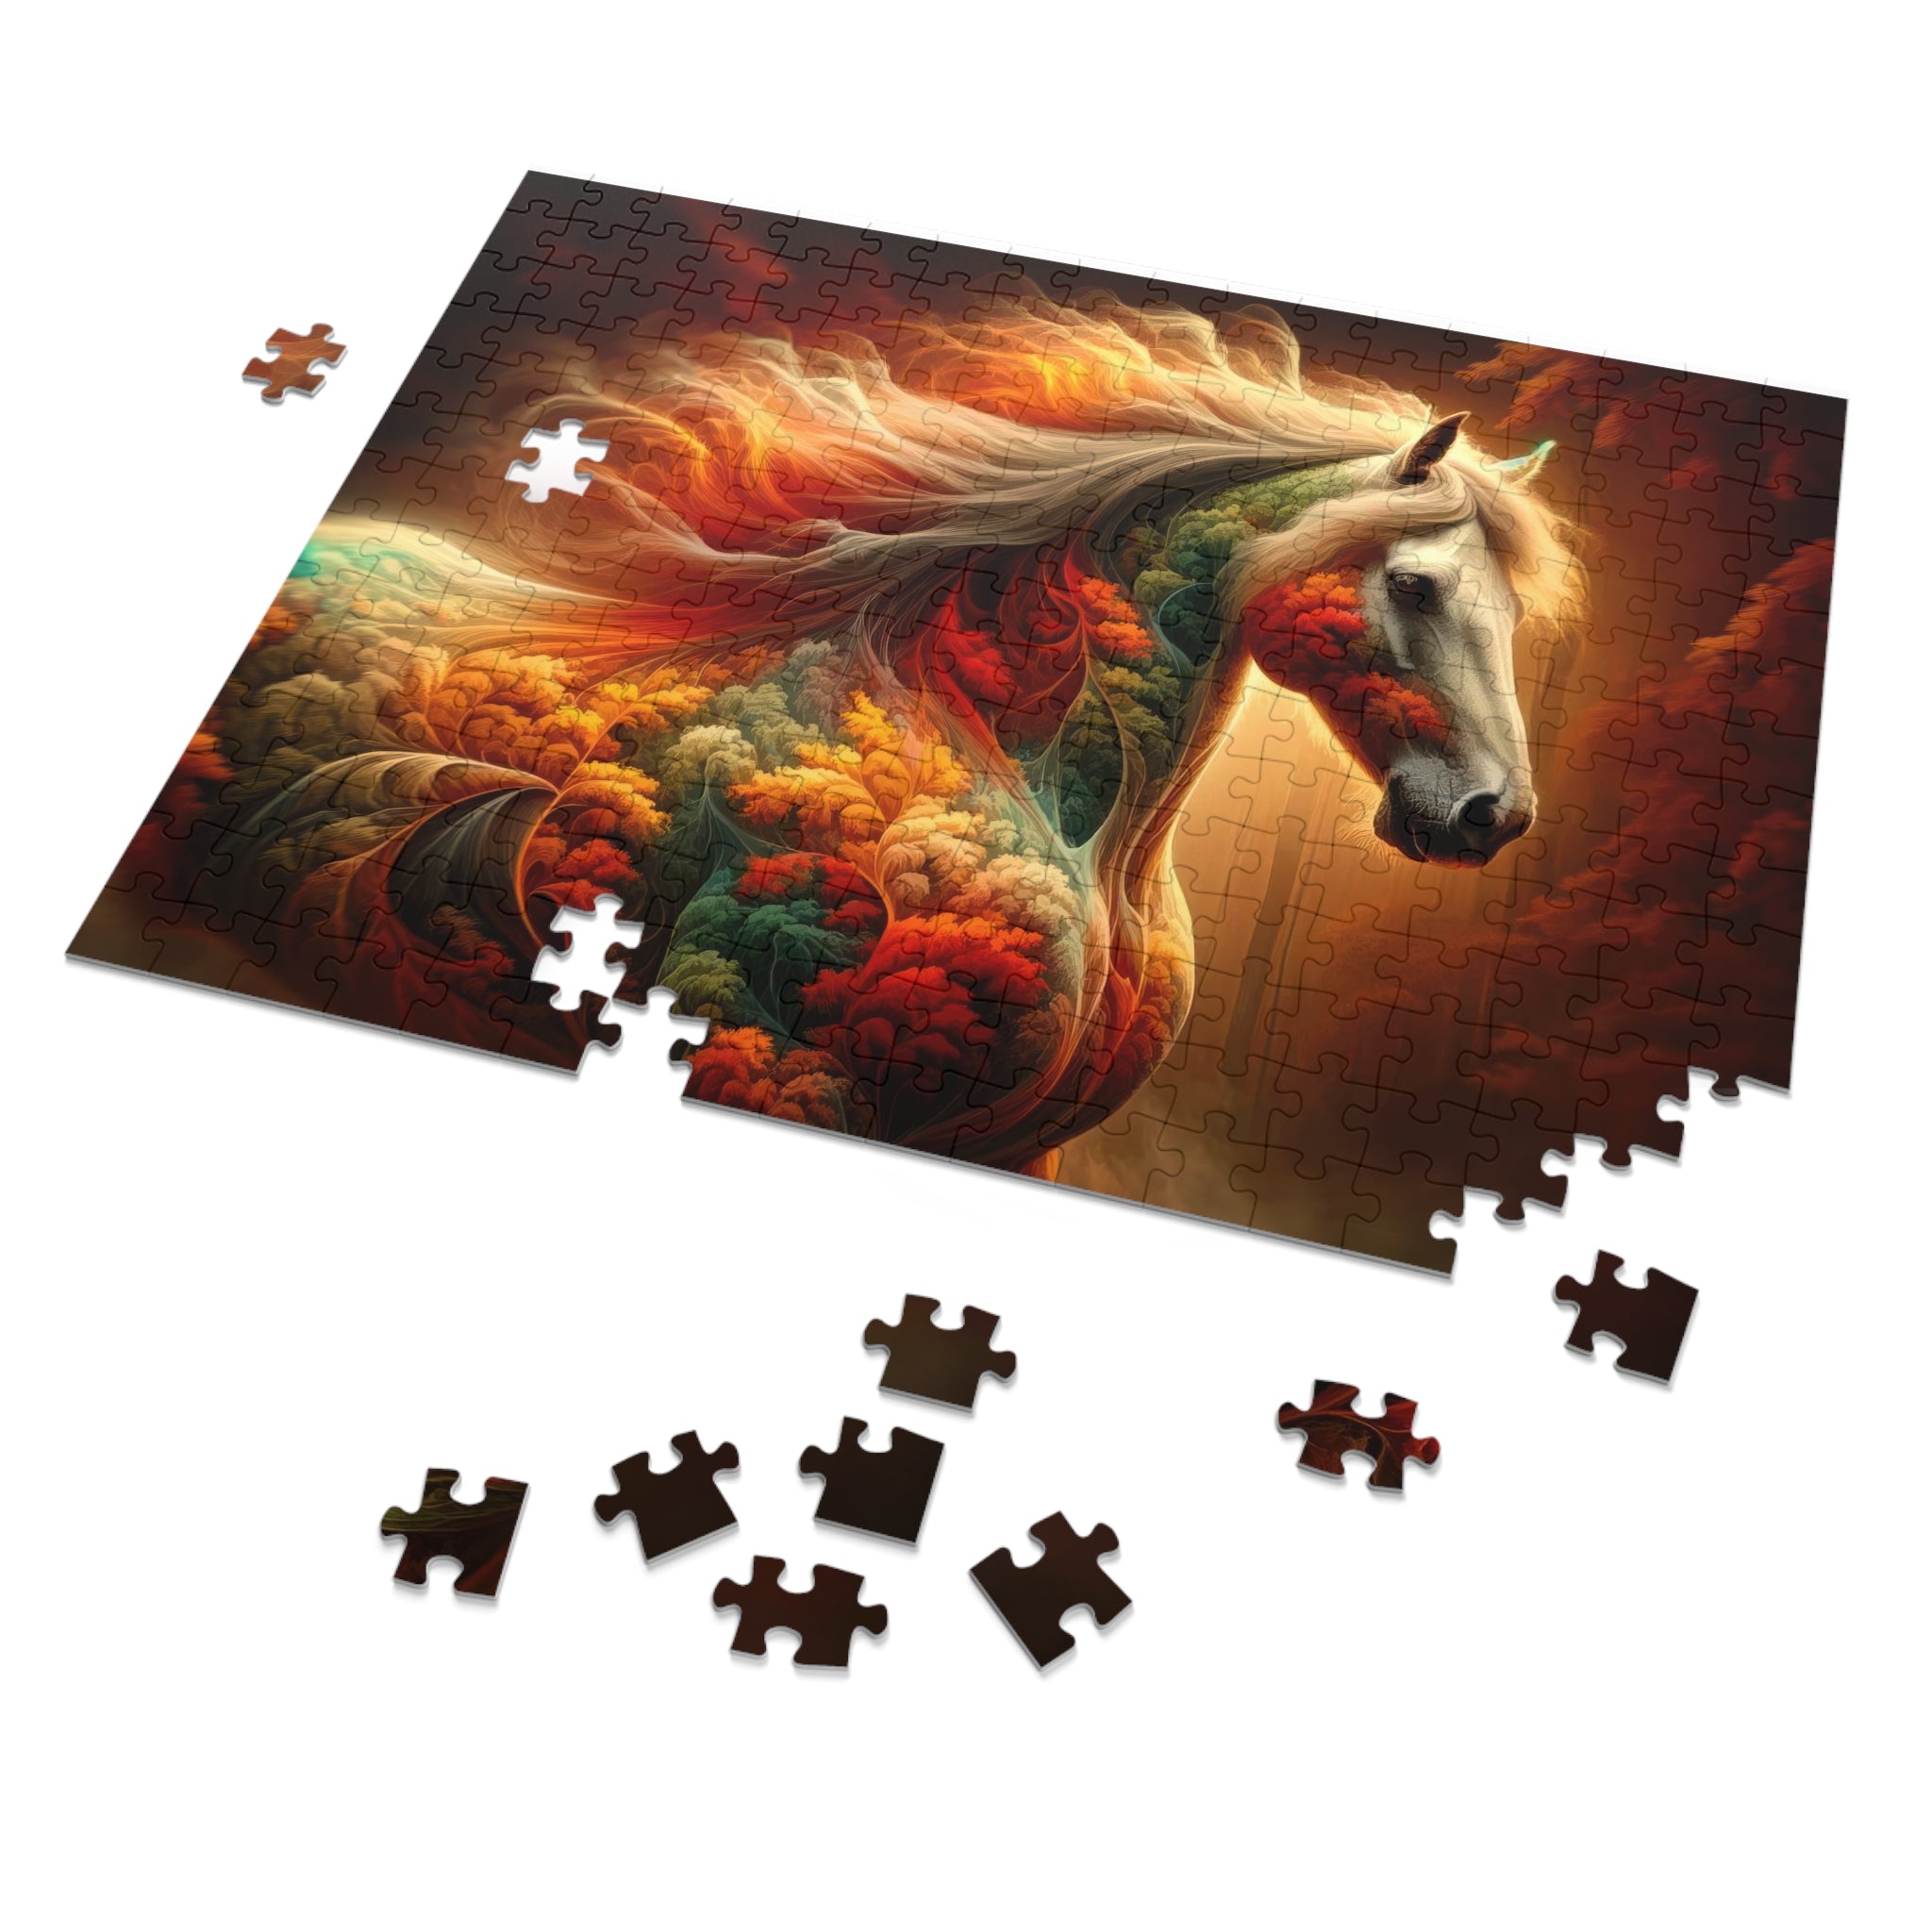 The Equine Illusion Puzzle